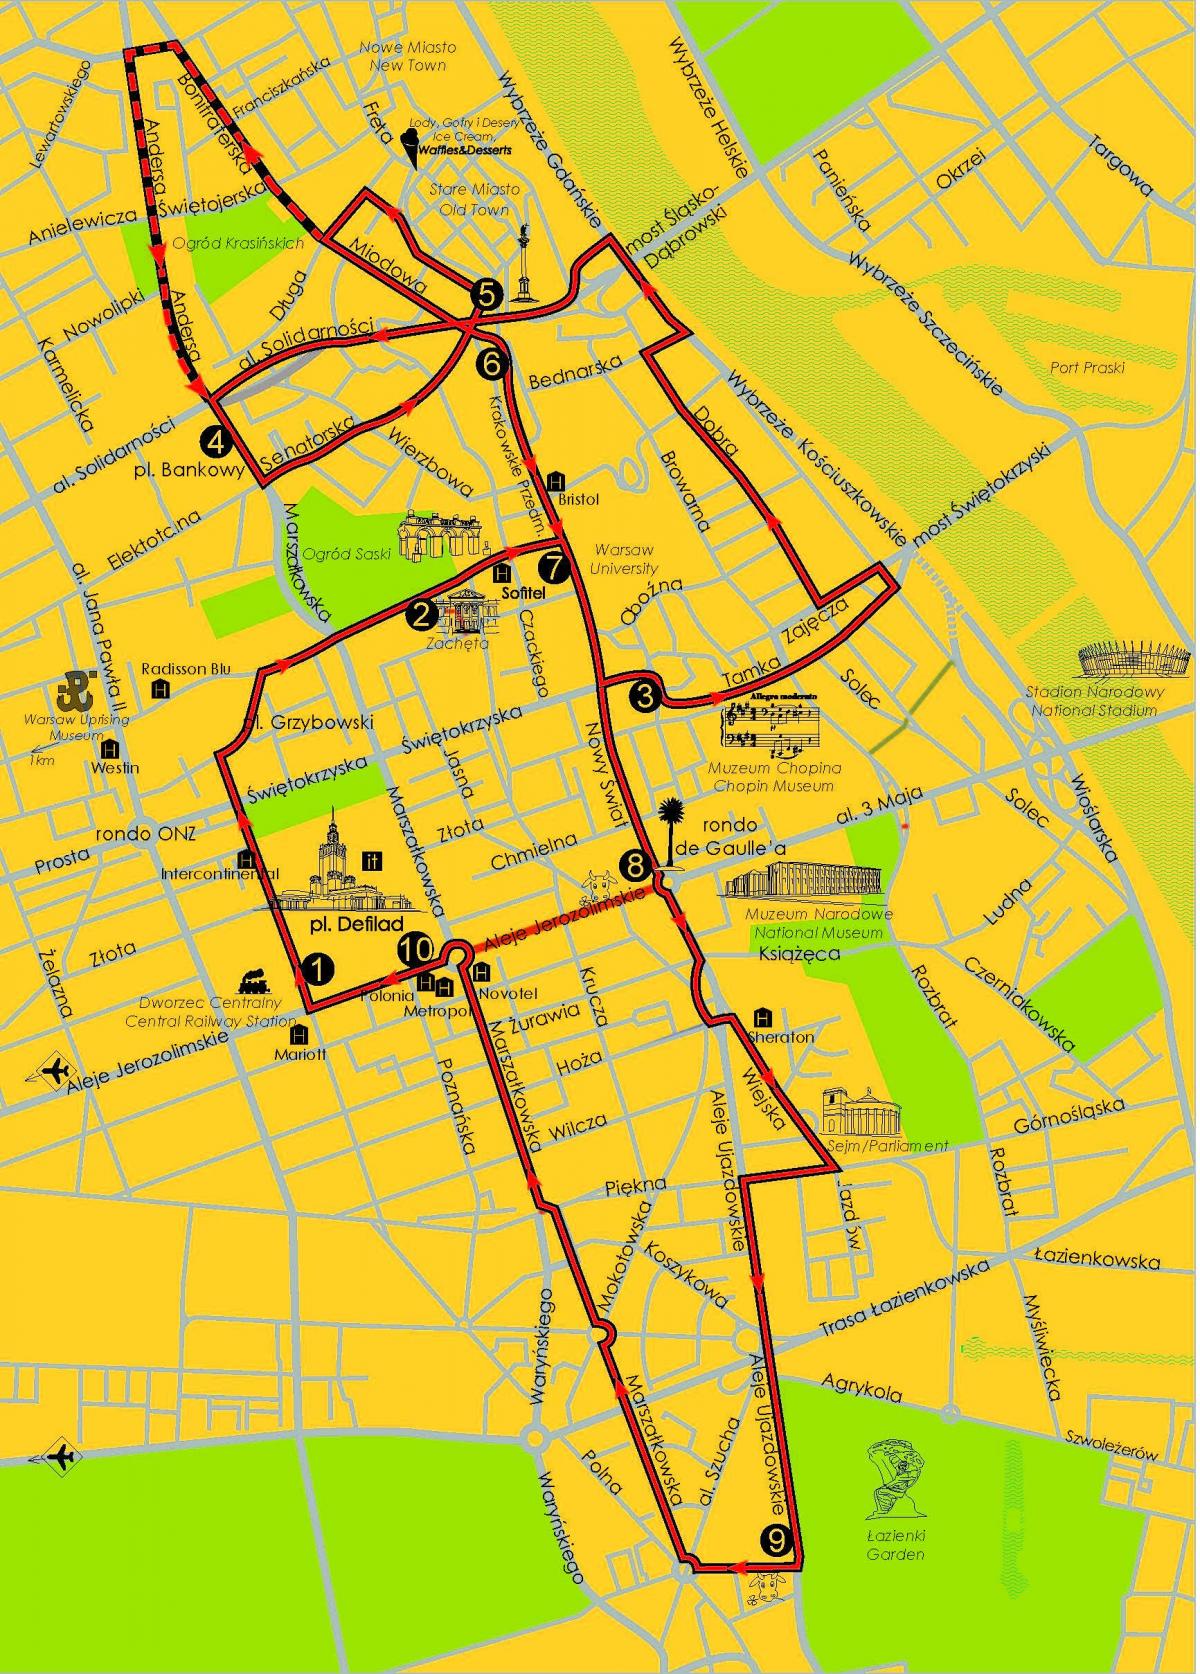 Mapa de Varsòvia hop on hop off bus 